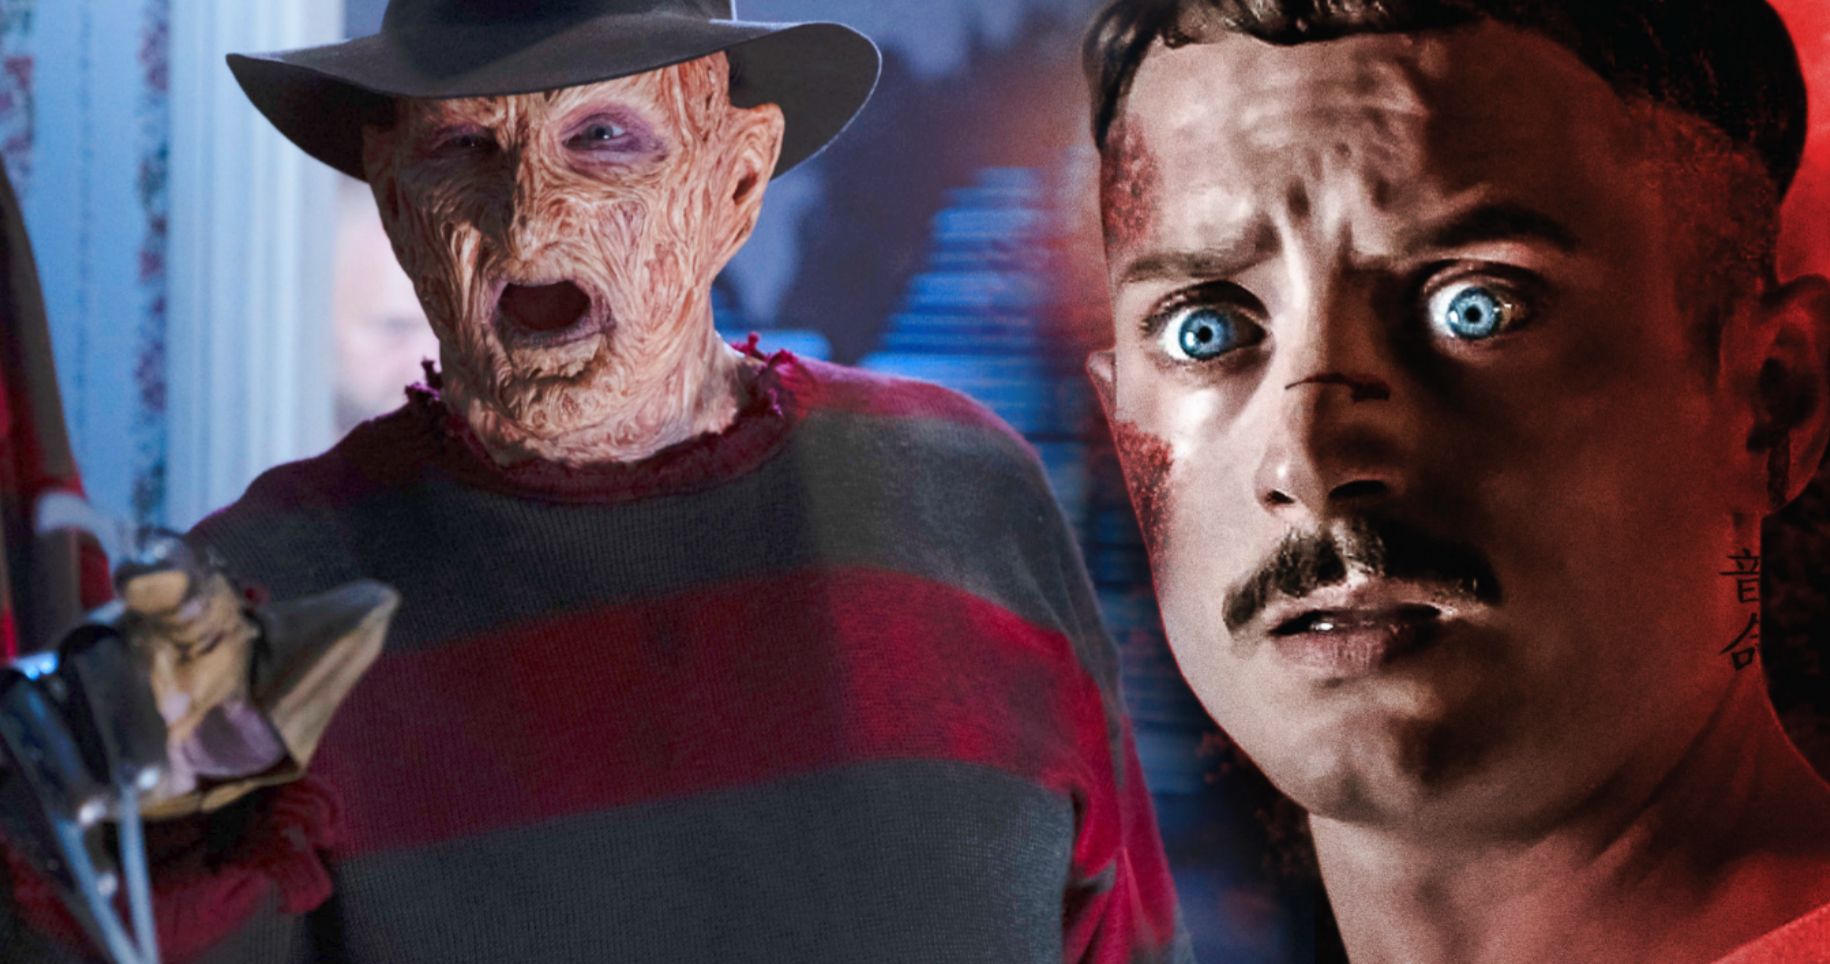 A Nightmare on Elm Street Reboot Update: Elijah Wood Wants Robert Englund to Return as Freddy